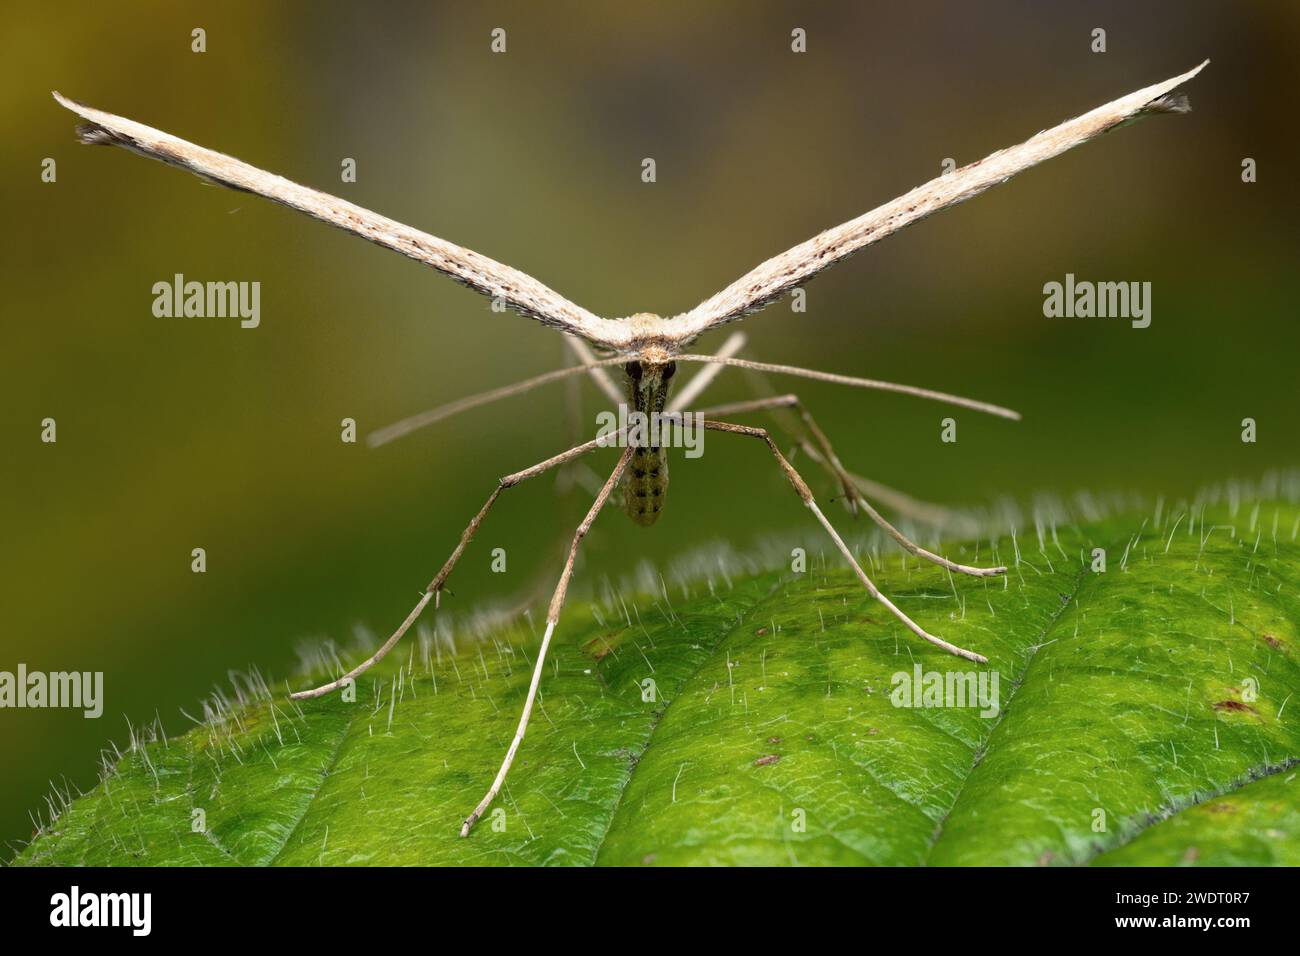 Frontale Ansicht der überwinterenden Plume Motte (Emmelina monodactyla) in Ruhe auf Brombeerblatt. Tipperary, Irland Stockfoto